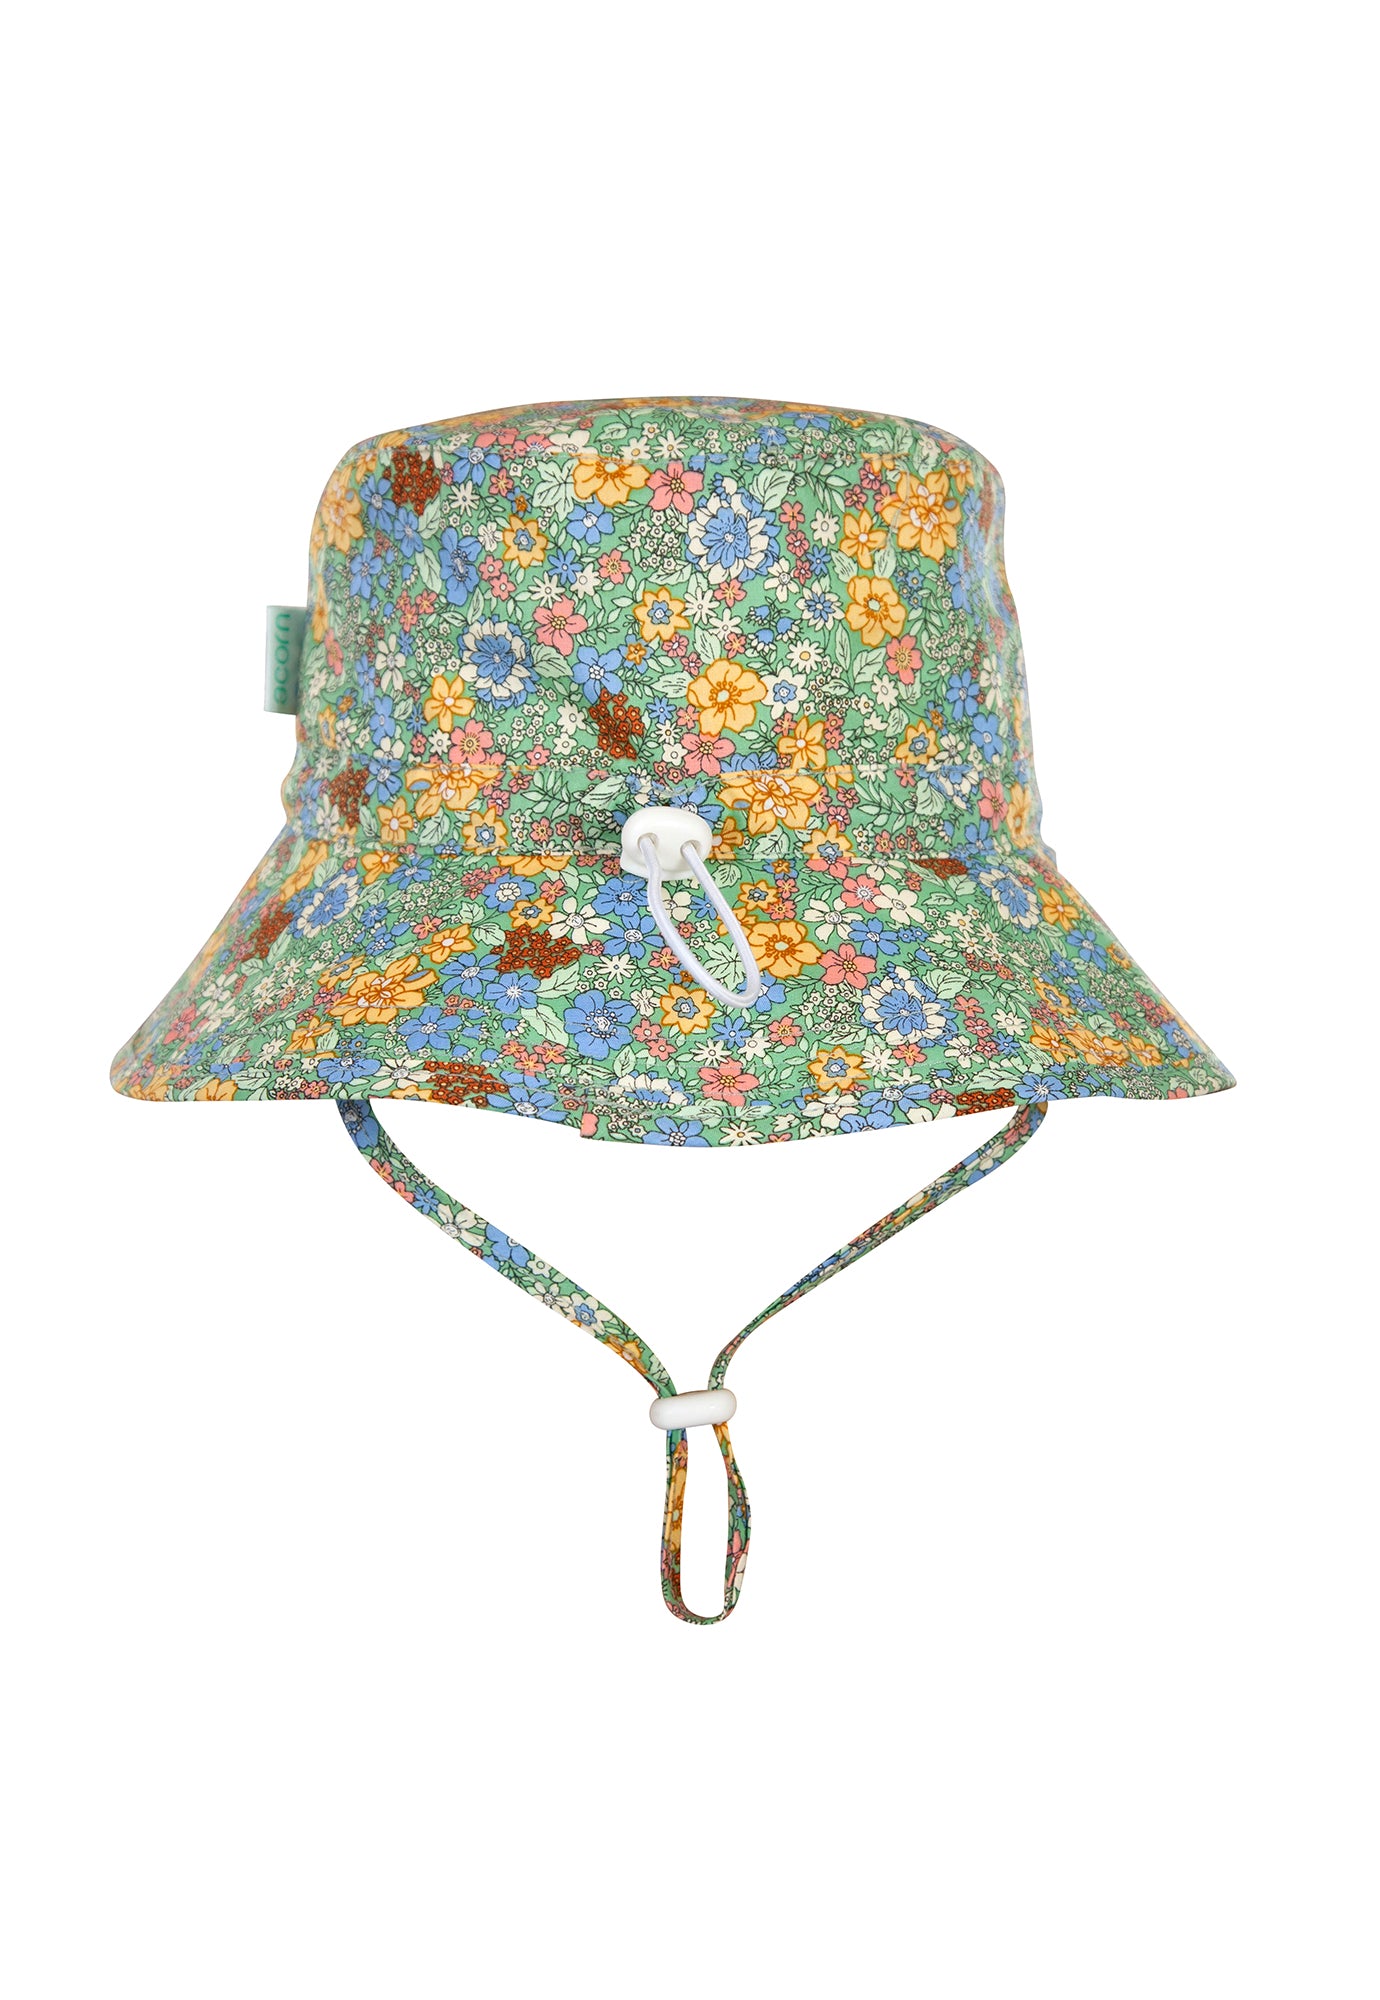 acorn kids - grace bucket hat - mint floral